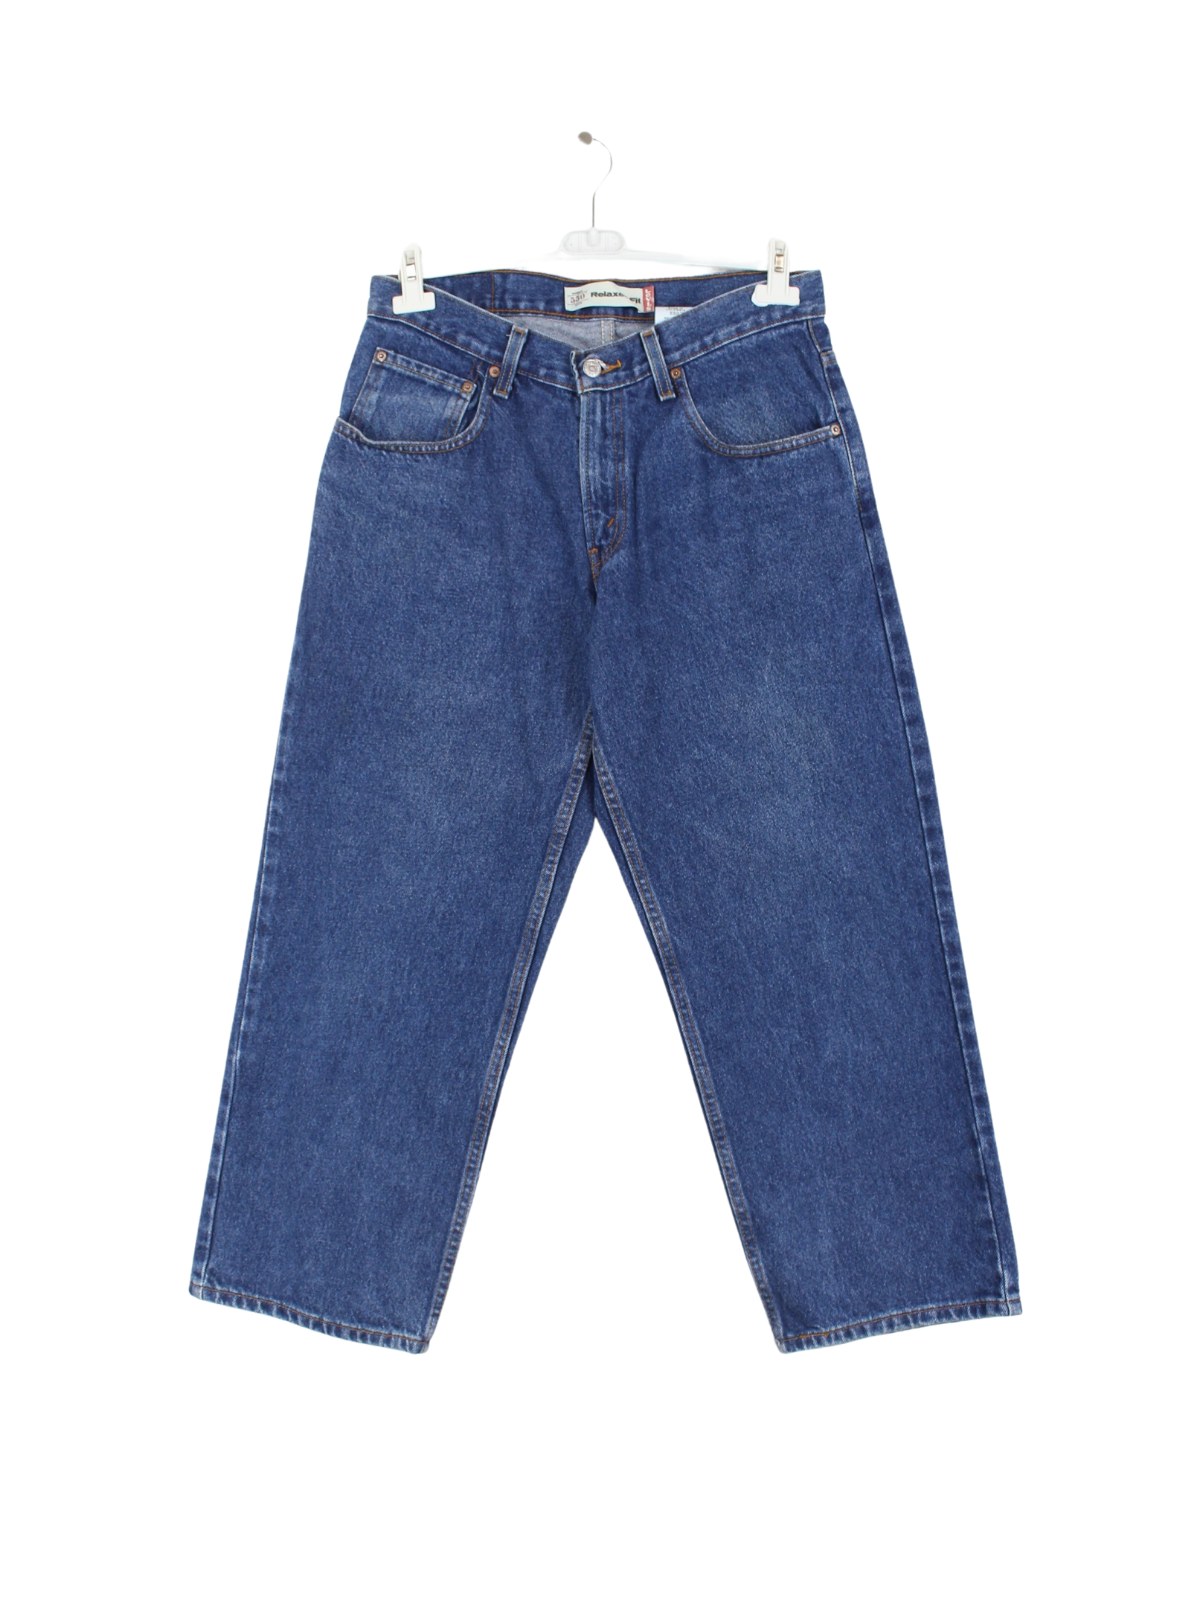 Levis 550 Women'S Jeans Blue W33 L28 – Peeces